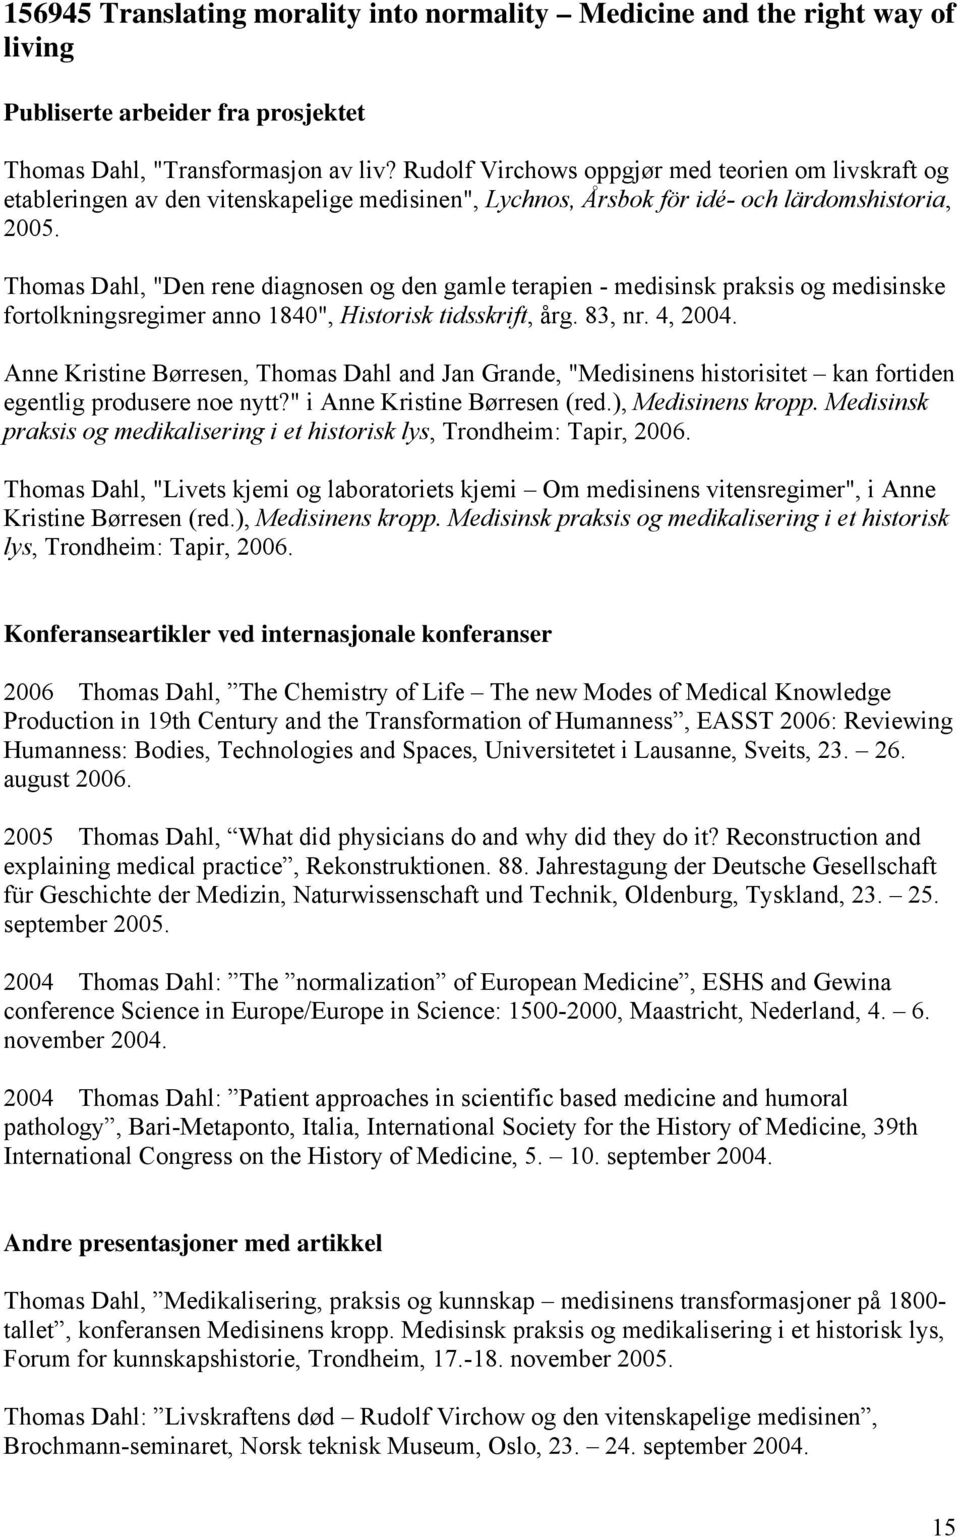 Thomas Dahl, "Den rene diagnosen og den gamle terapien - medisinsk praksis og medisinske fortolkningsregimer anno 1840", Historisk tidsskrift, årg. 83, nr. 4, 2004.